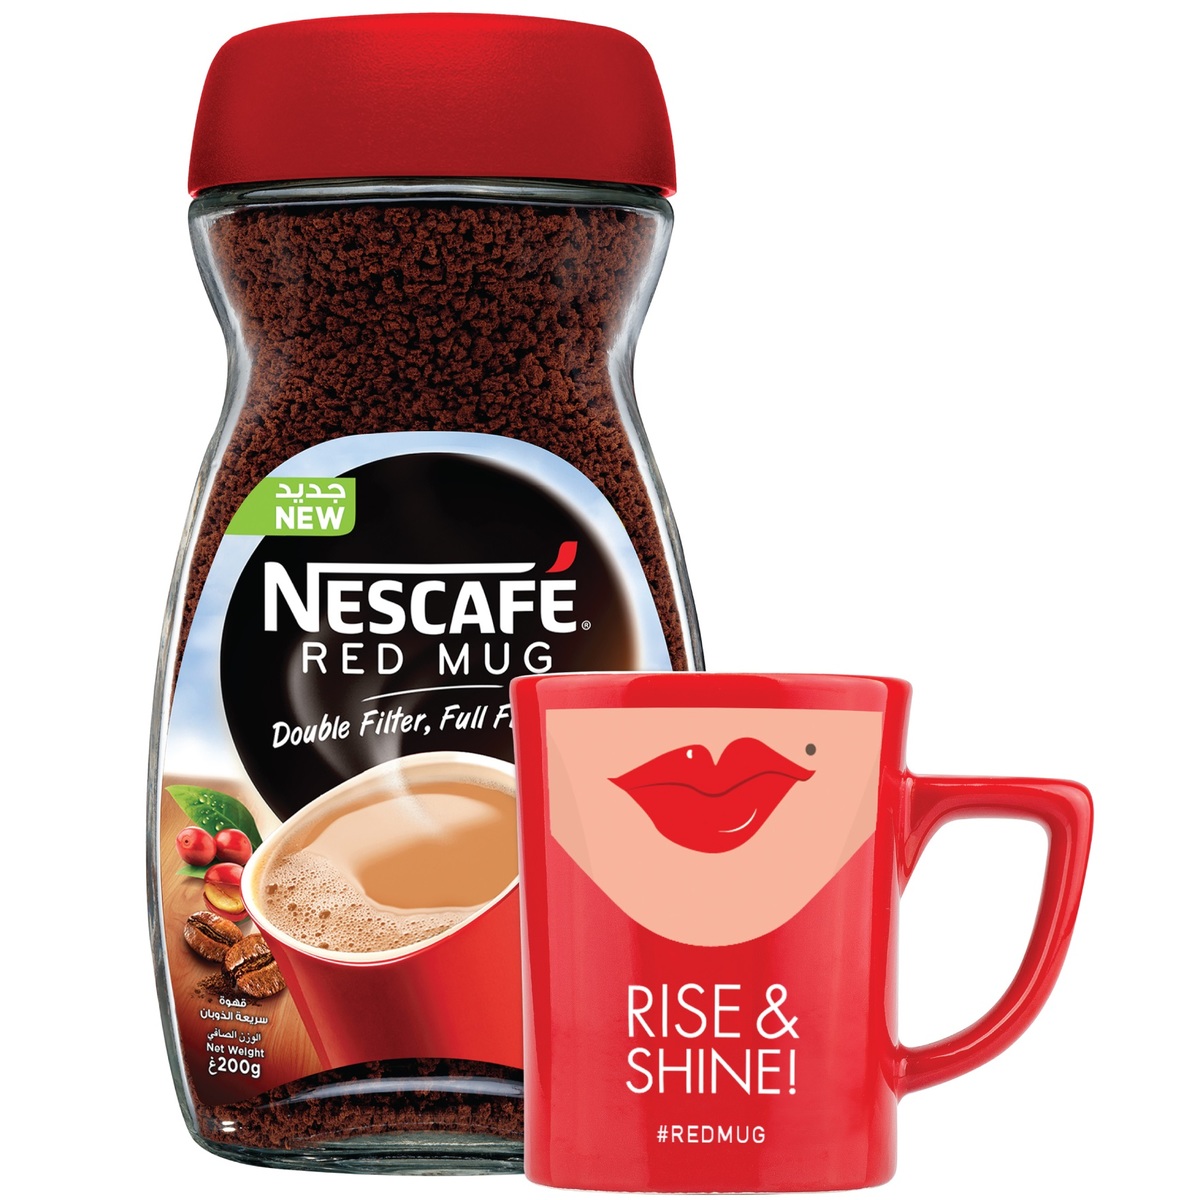 Nescafe Red Mug Coffee Jar 200 g + Mug